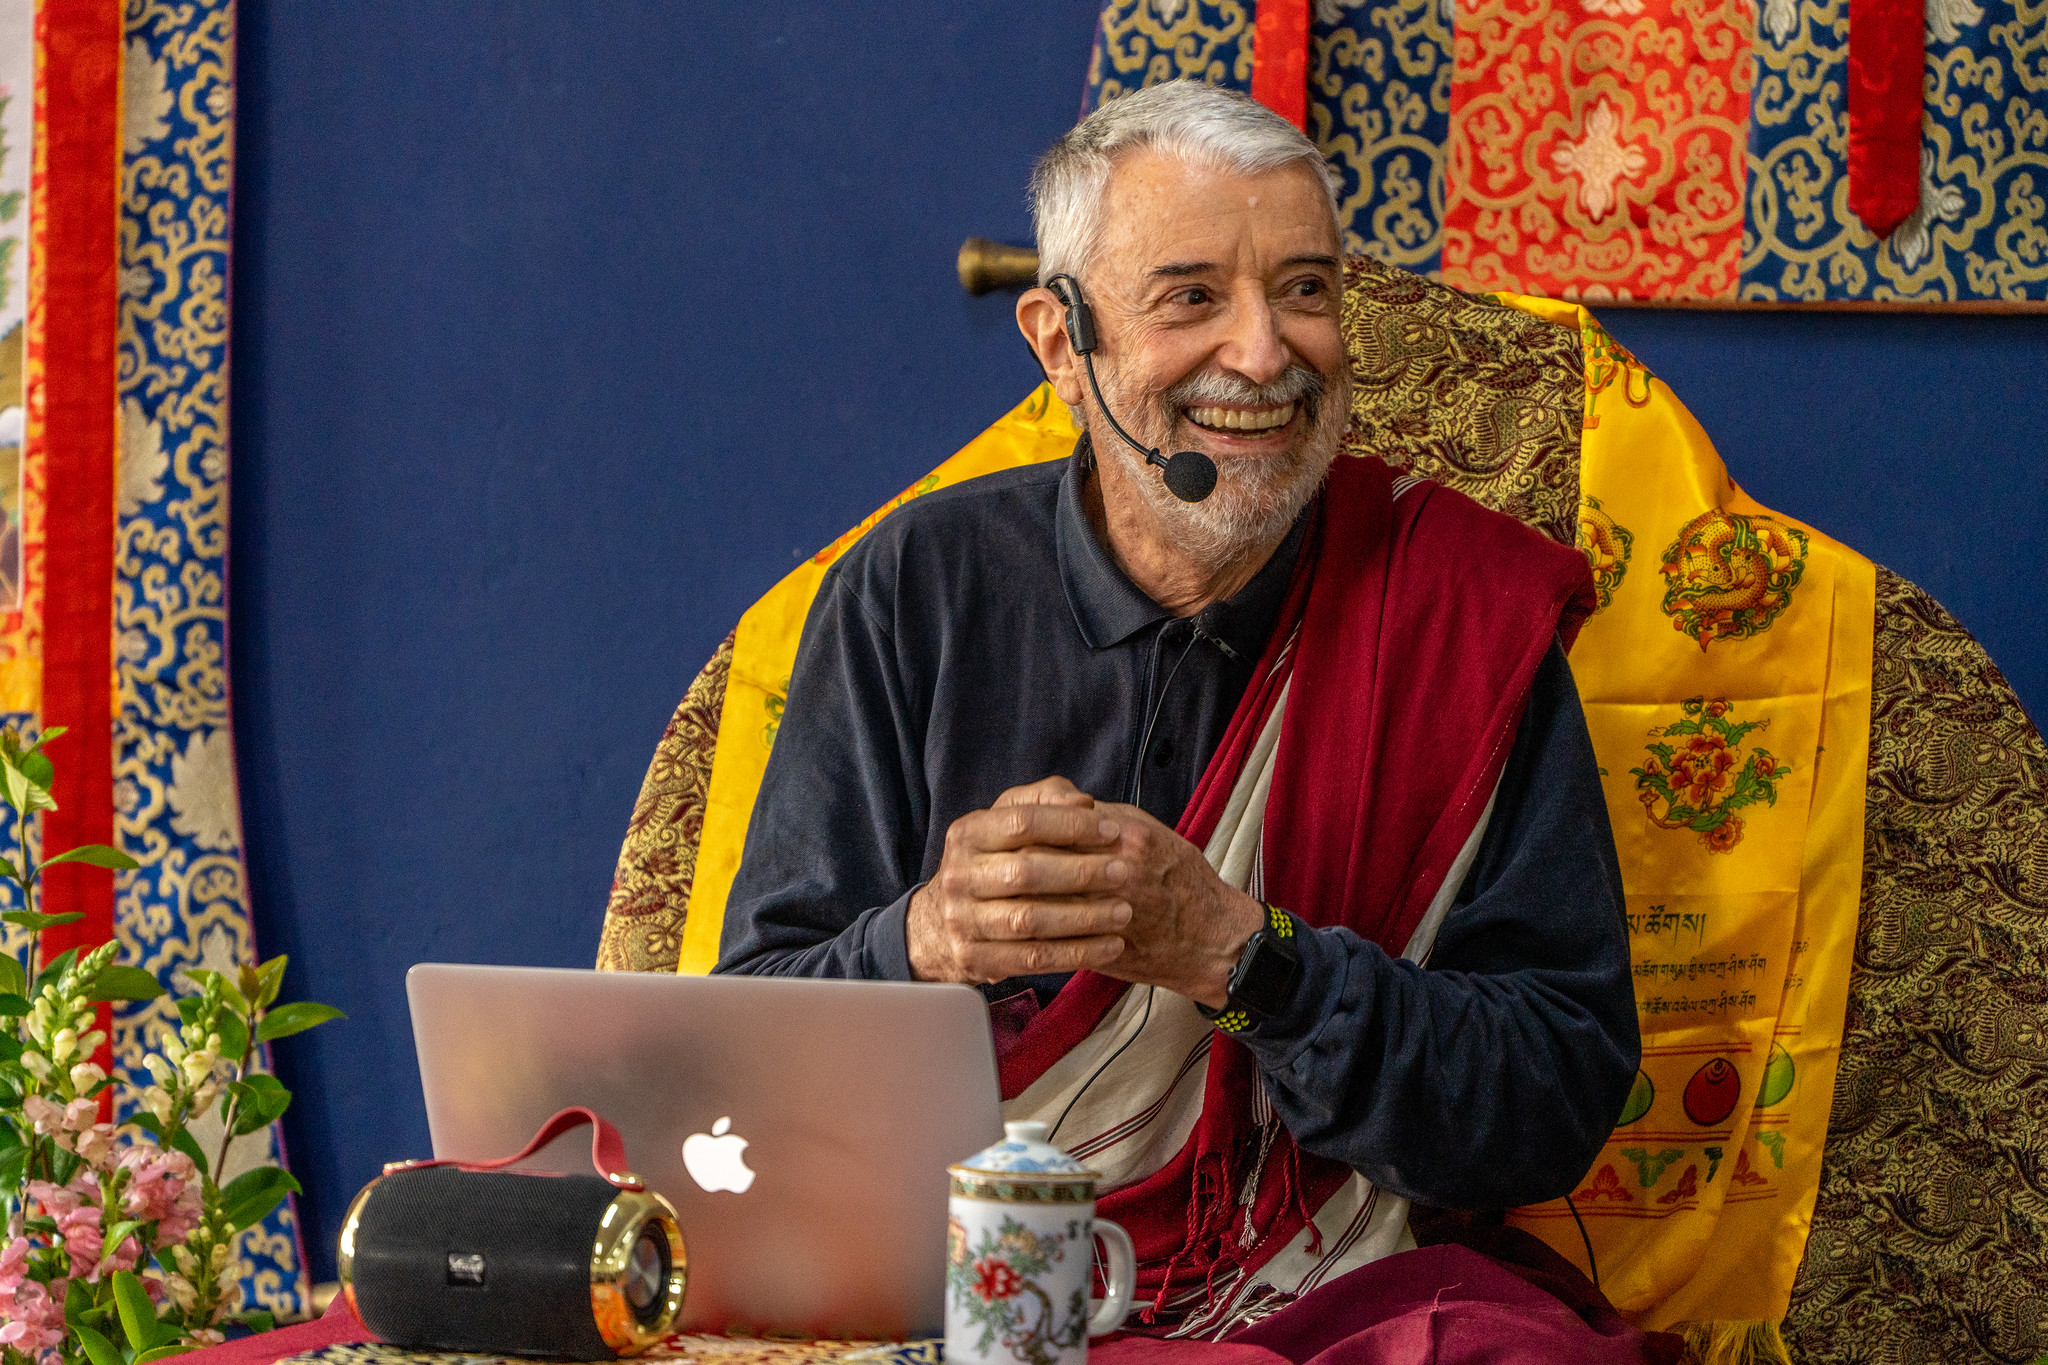 Palestra e curso com Lama Padma Samten em Florianópolis